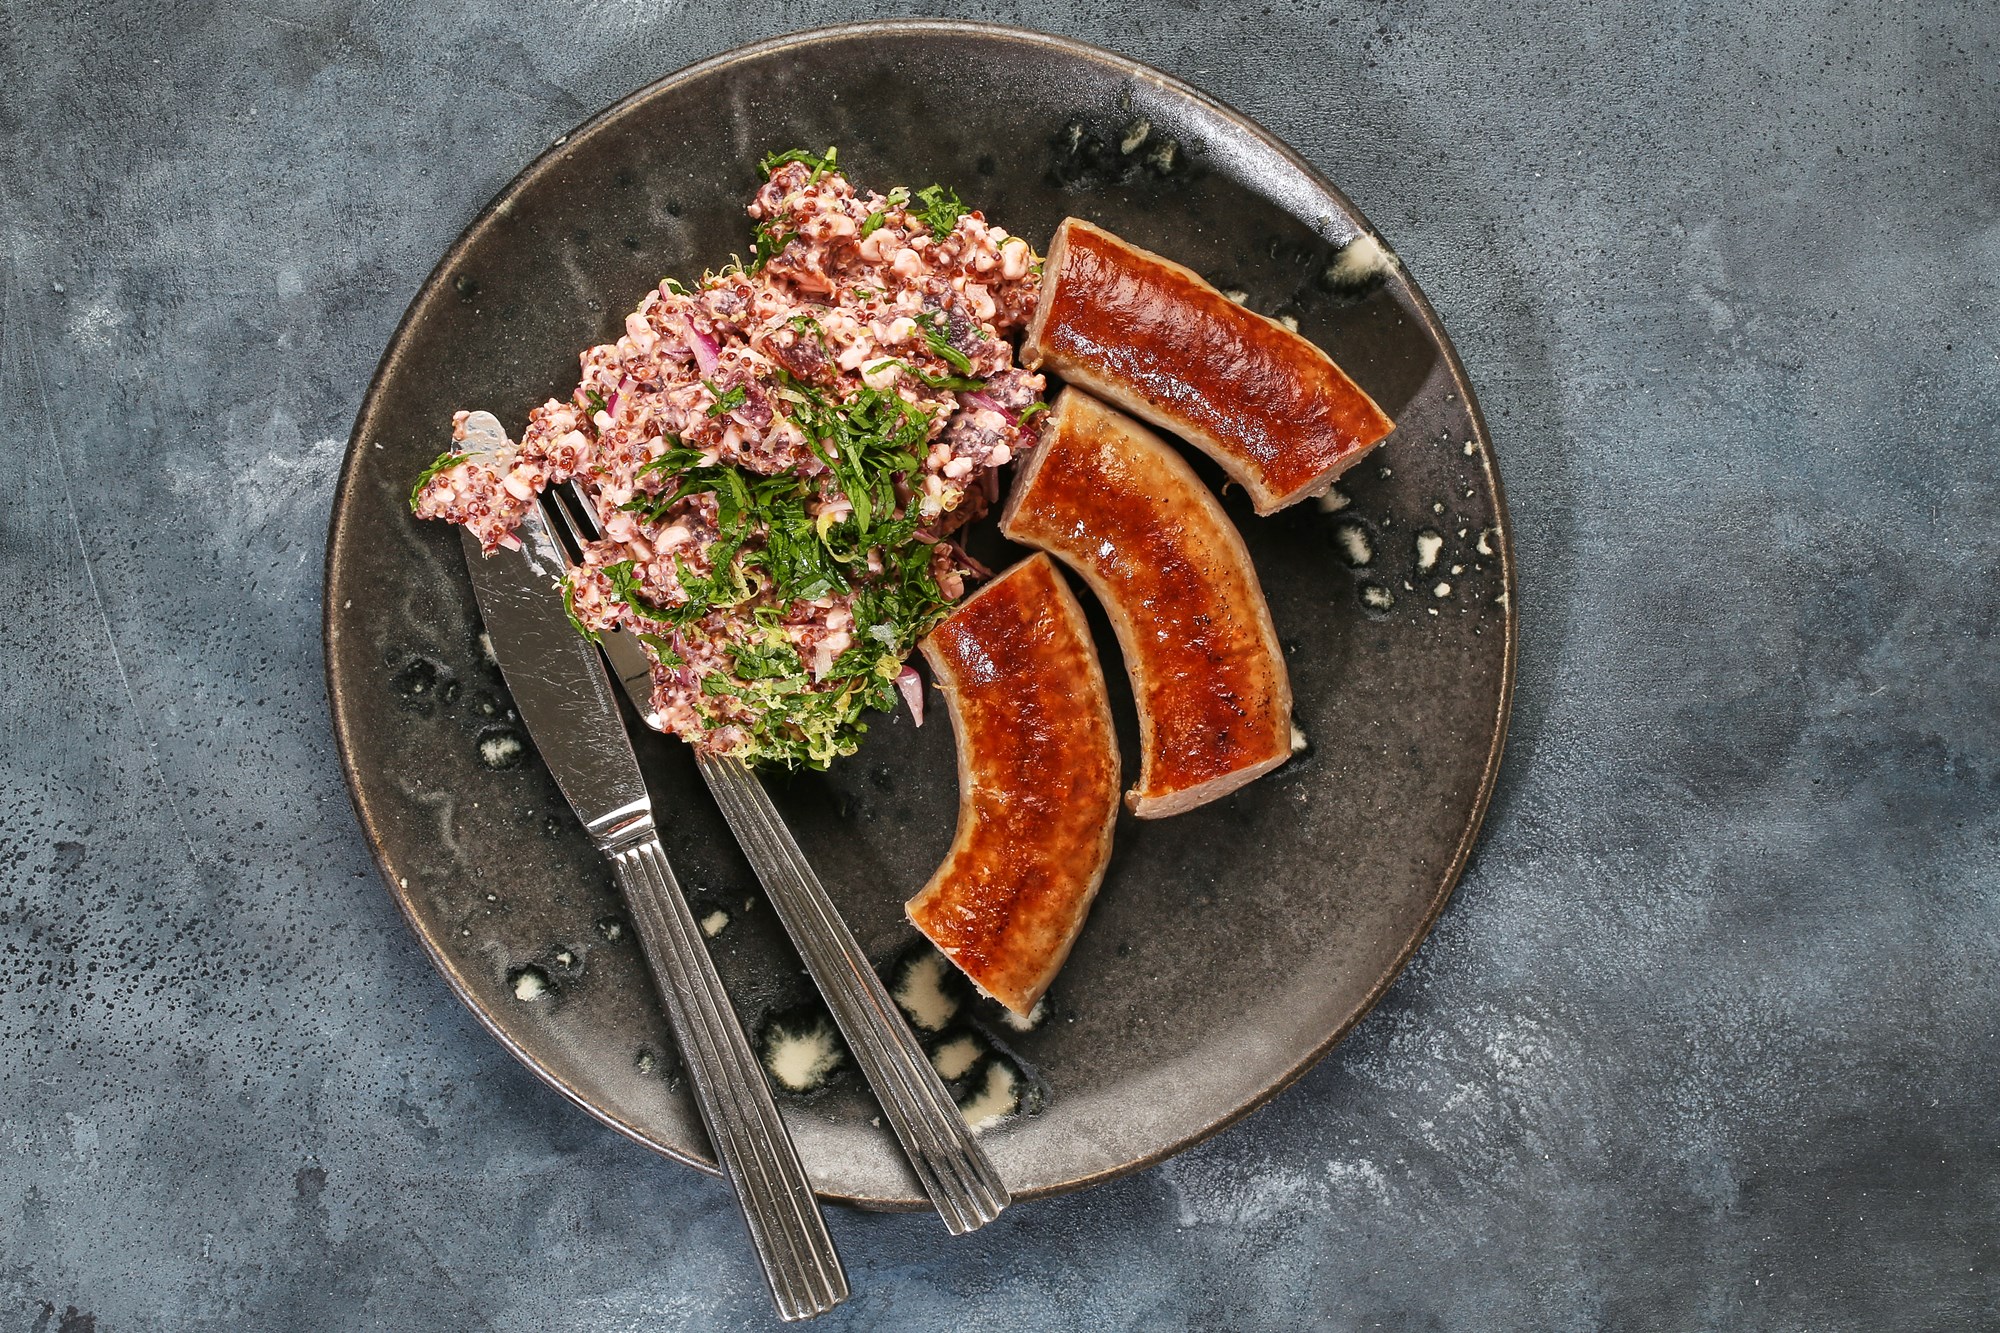 Stegte frankfurtere fra Bodebjerg med salat af rød quinoa, bladbeder, grov sennep & hytteost